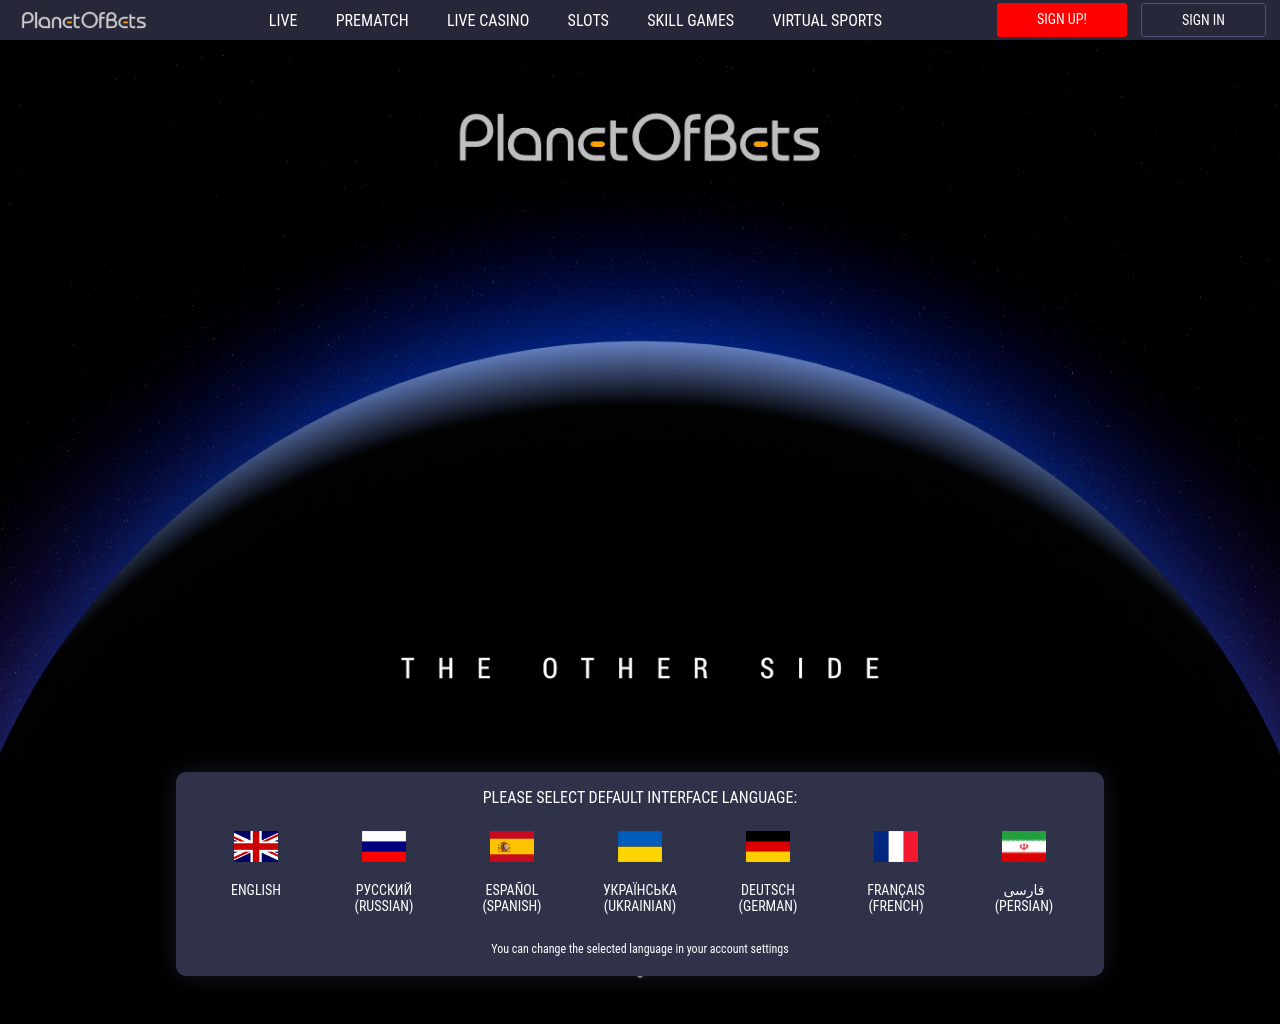 planetofbets.com